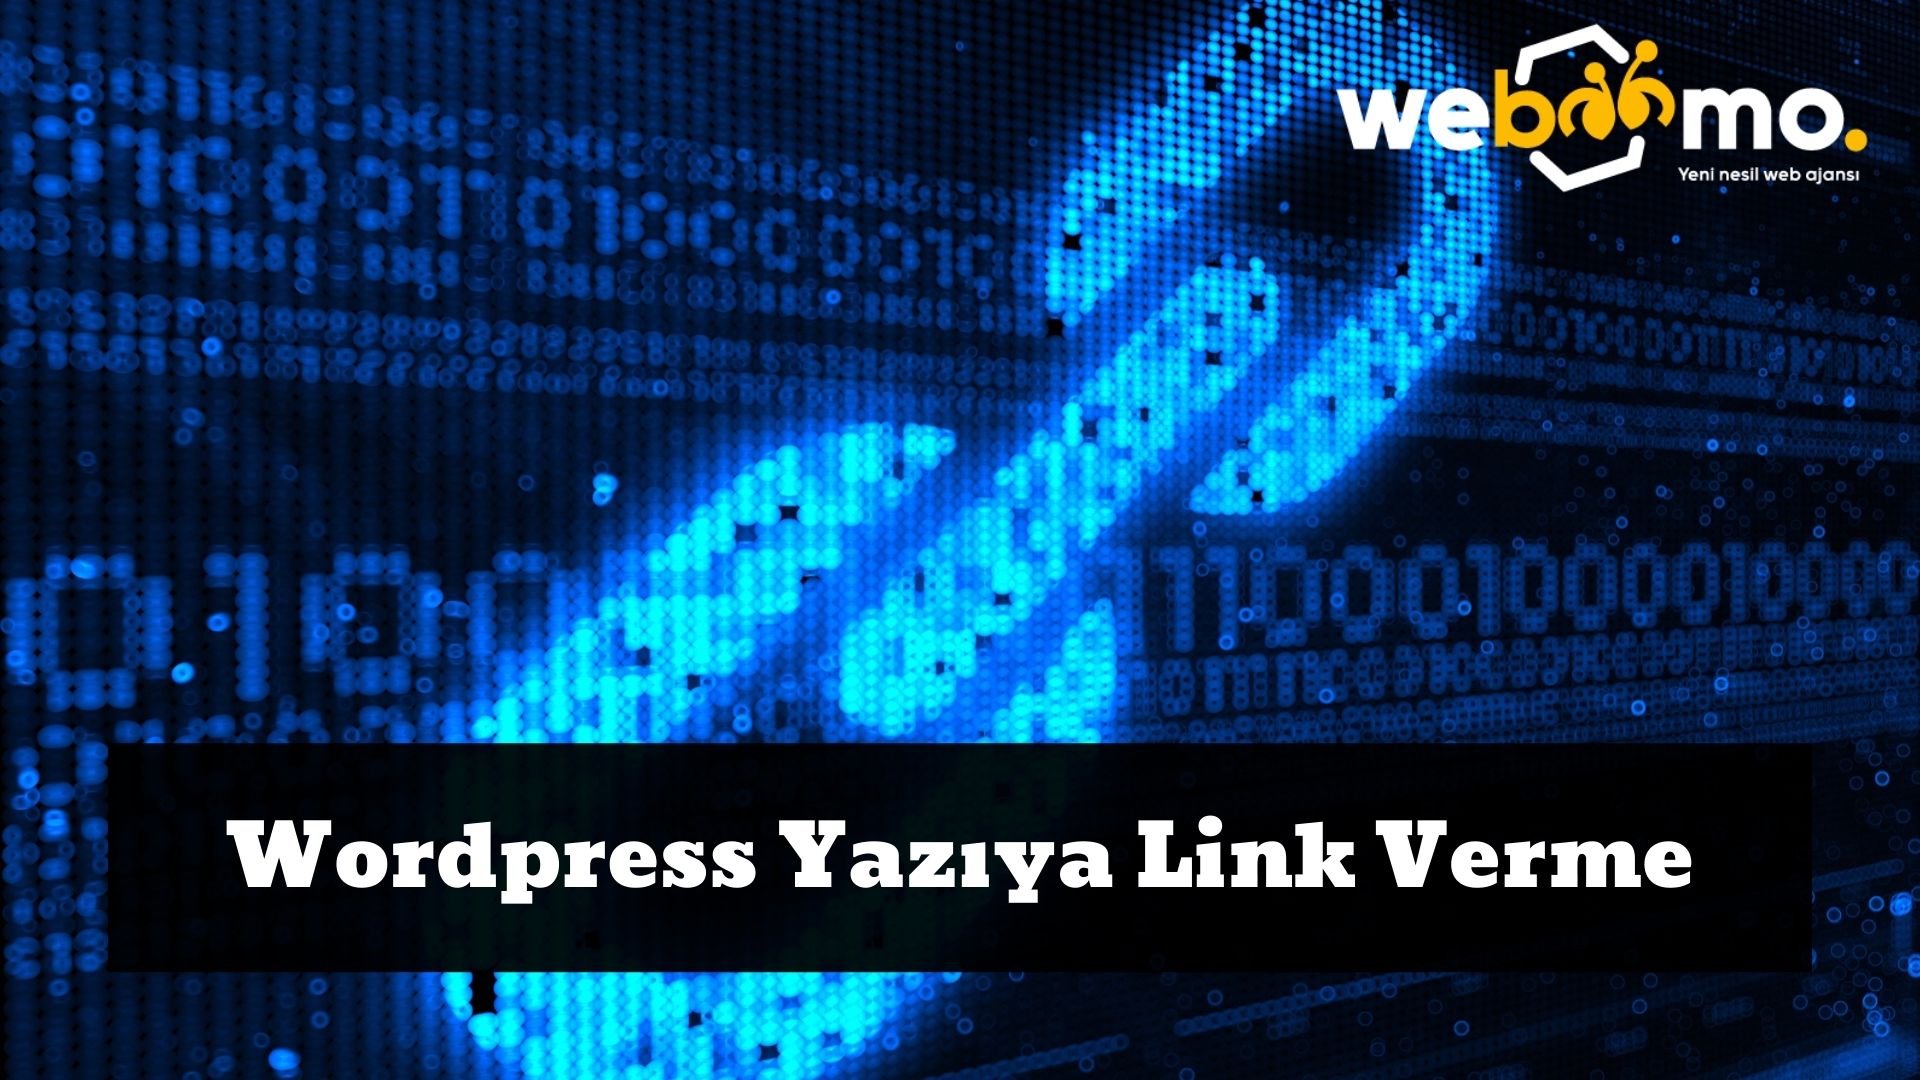 Wordpress Yaziya Link Verme